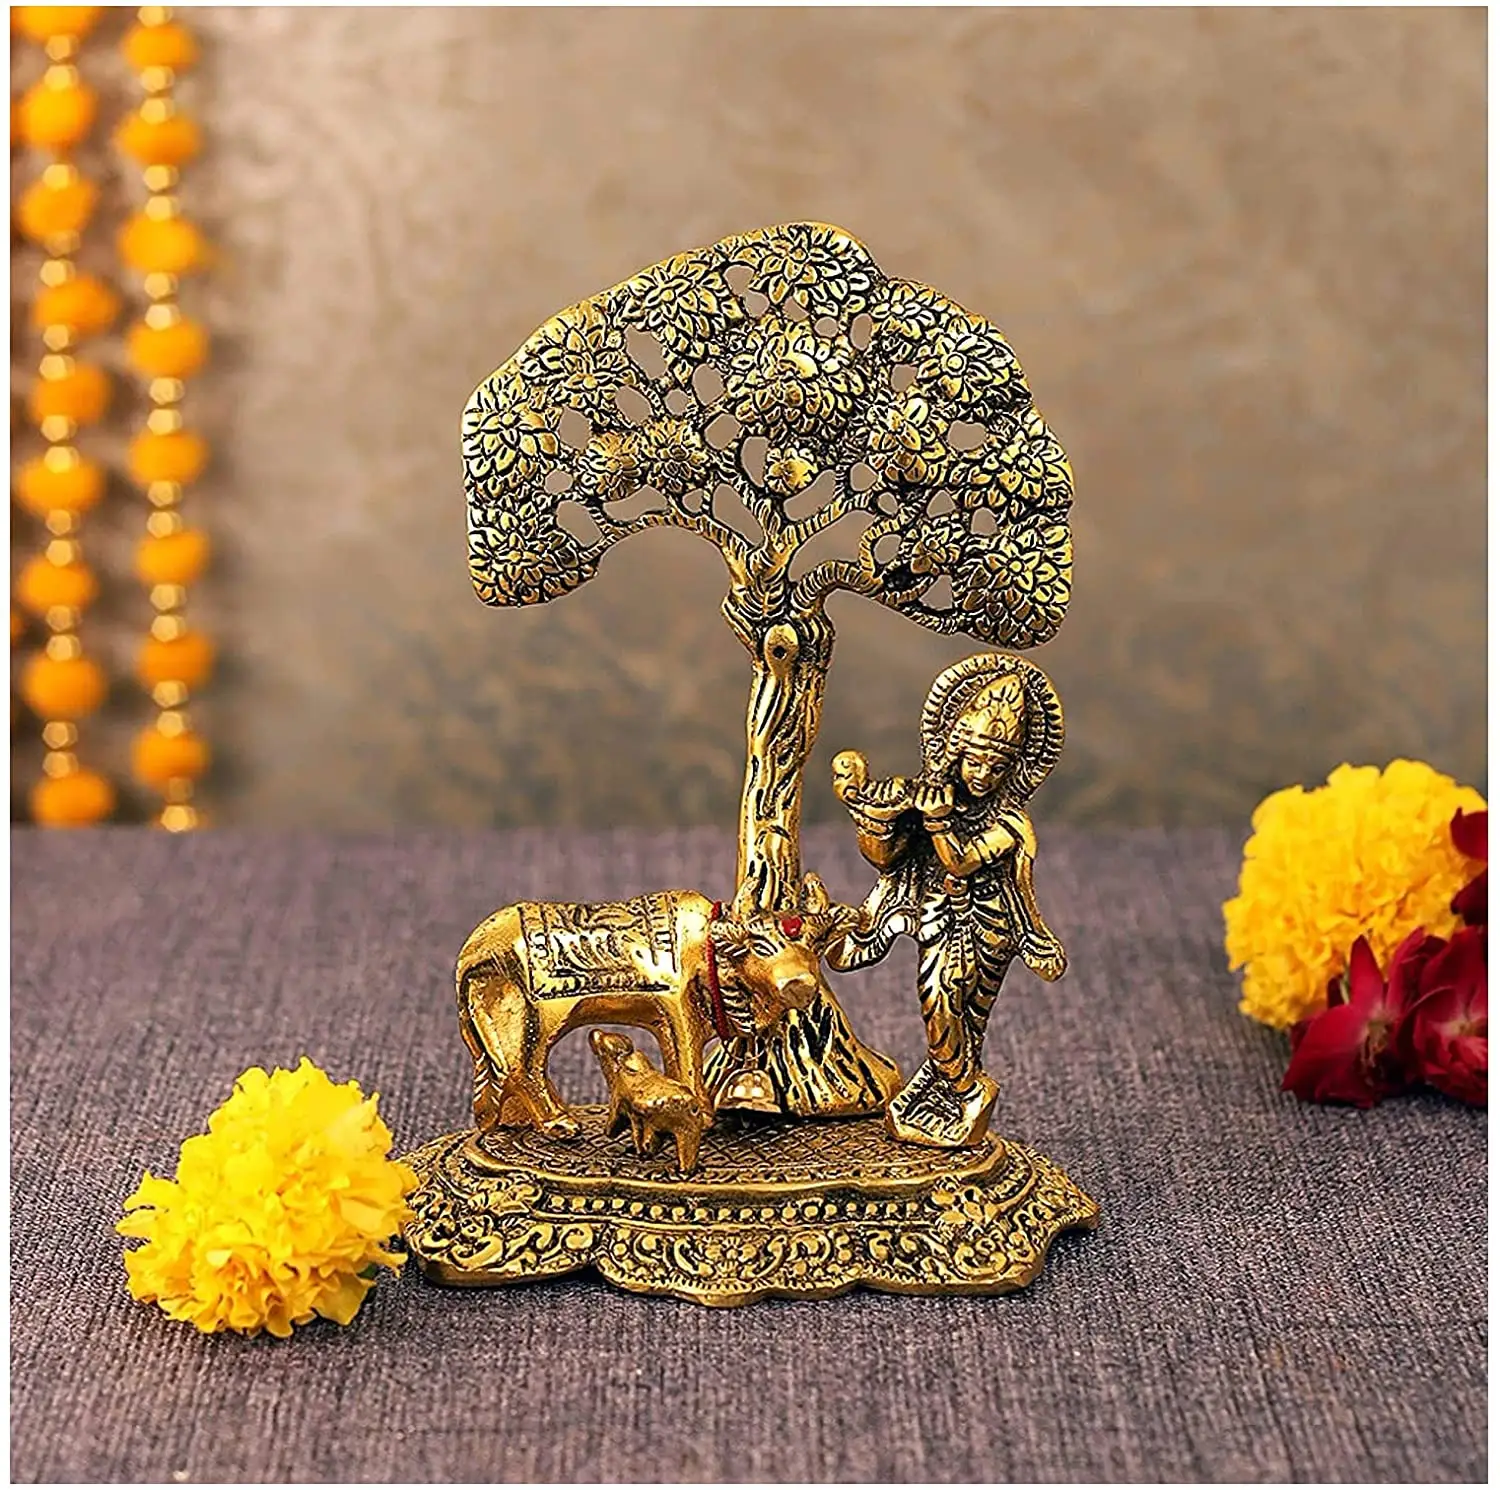 Благородная кришна с коровой и икры под деревом идол, индуические религиозные Мурти для janmashami, украшение для дома, храм, украшение для свадьбы